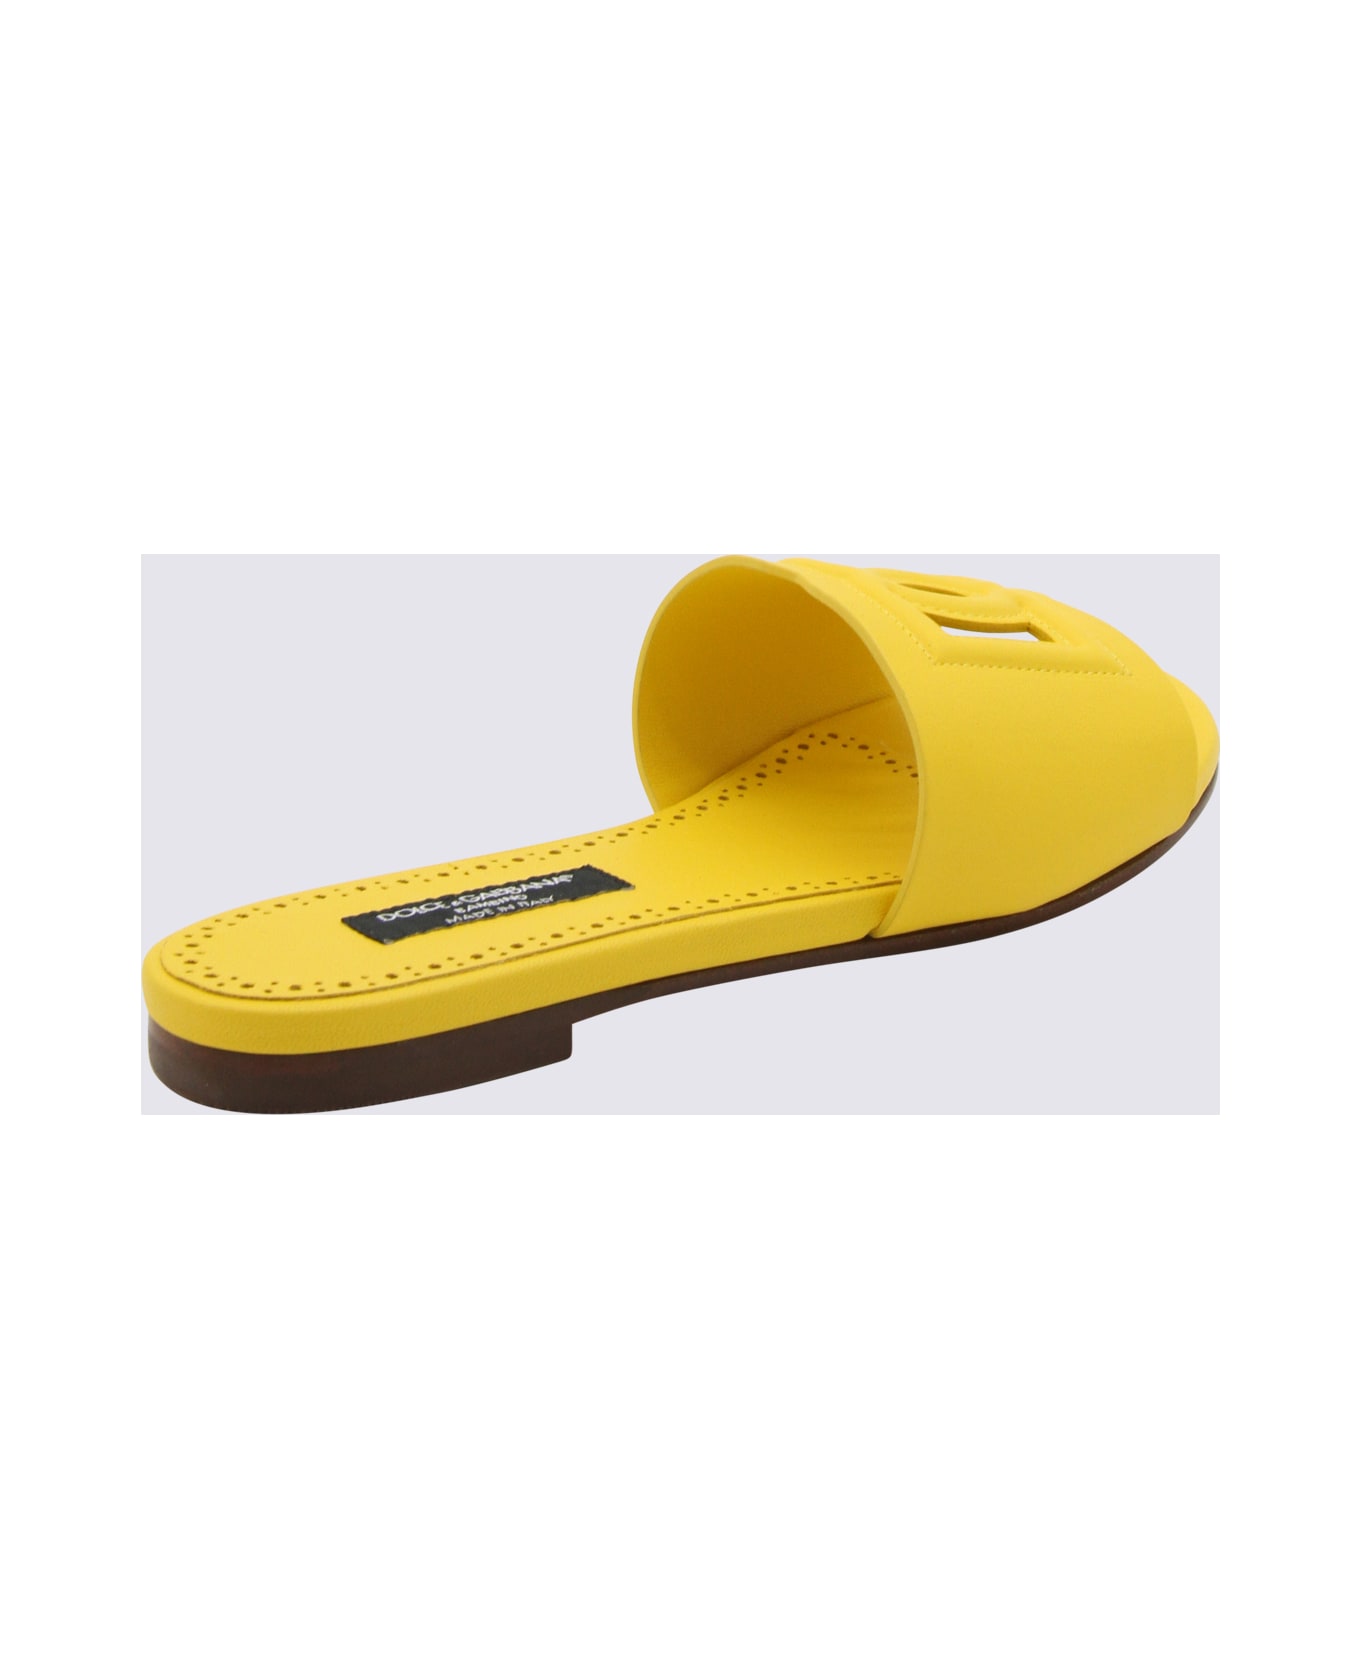 Neu Schuhe Sneaker NIKE Gyakusou Free 3.0 Flyknit Gr 43 9 Yellow Leather Flats - Yellow